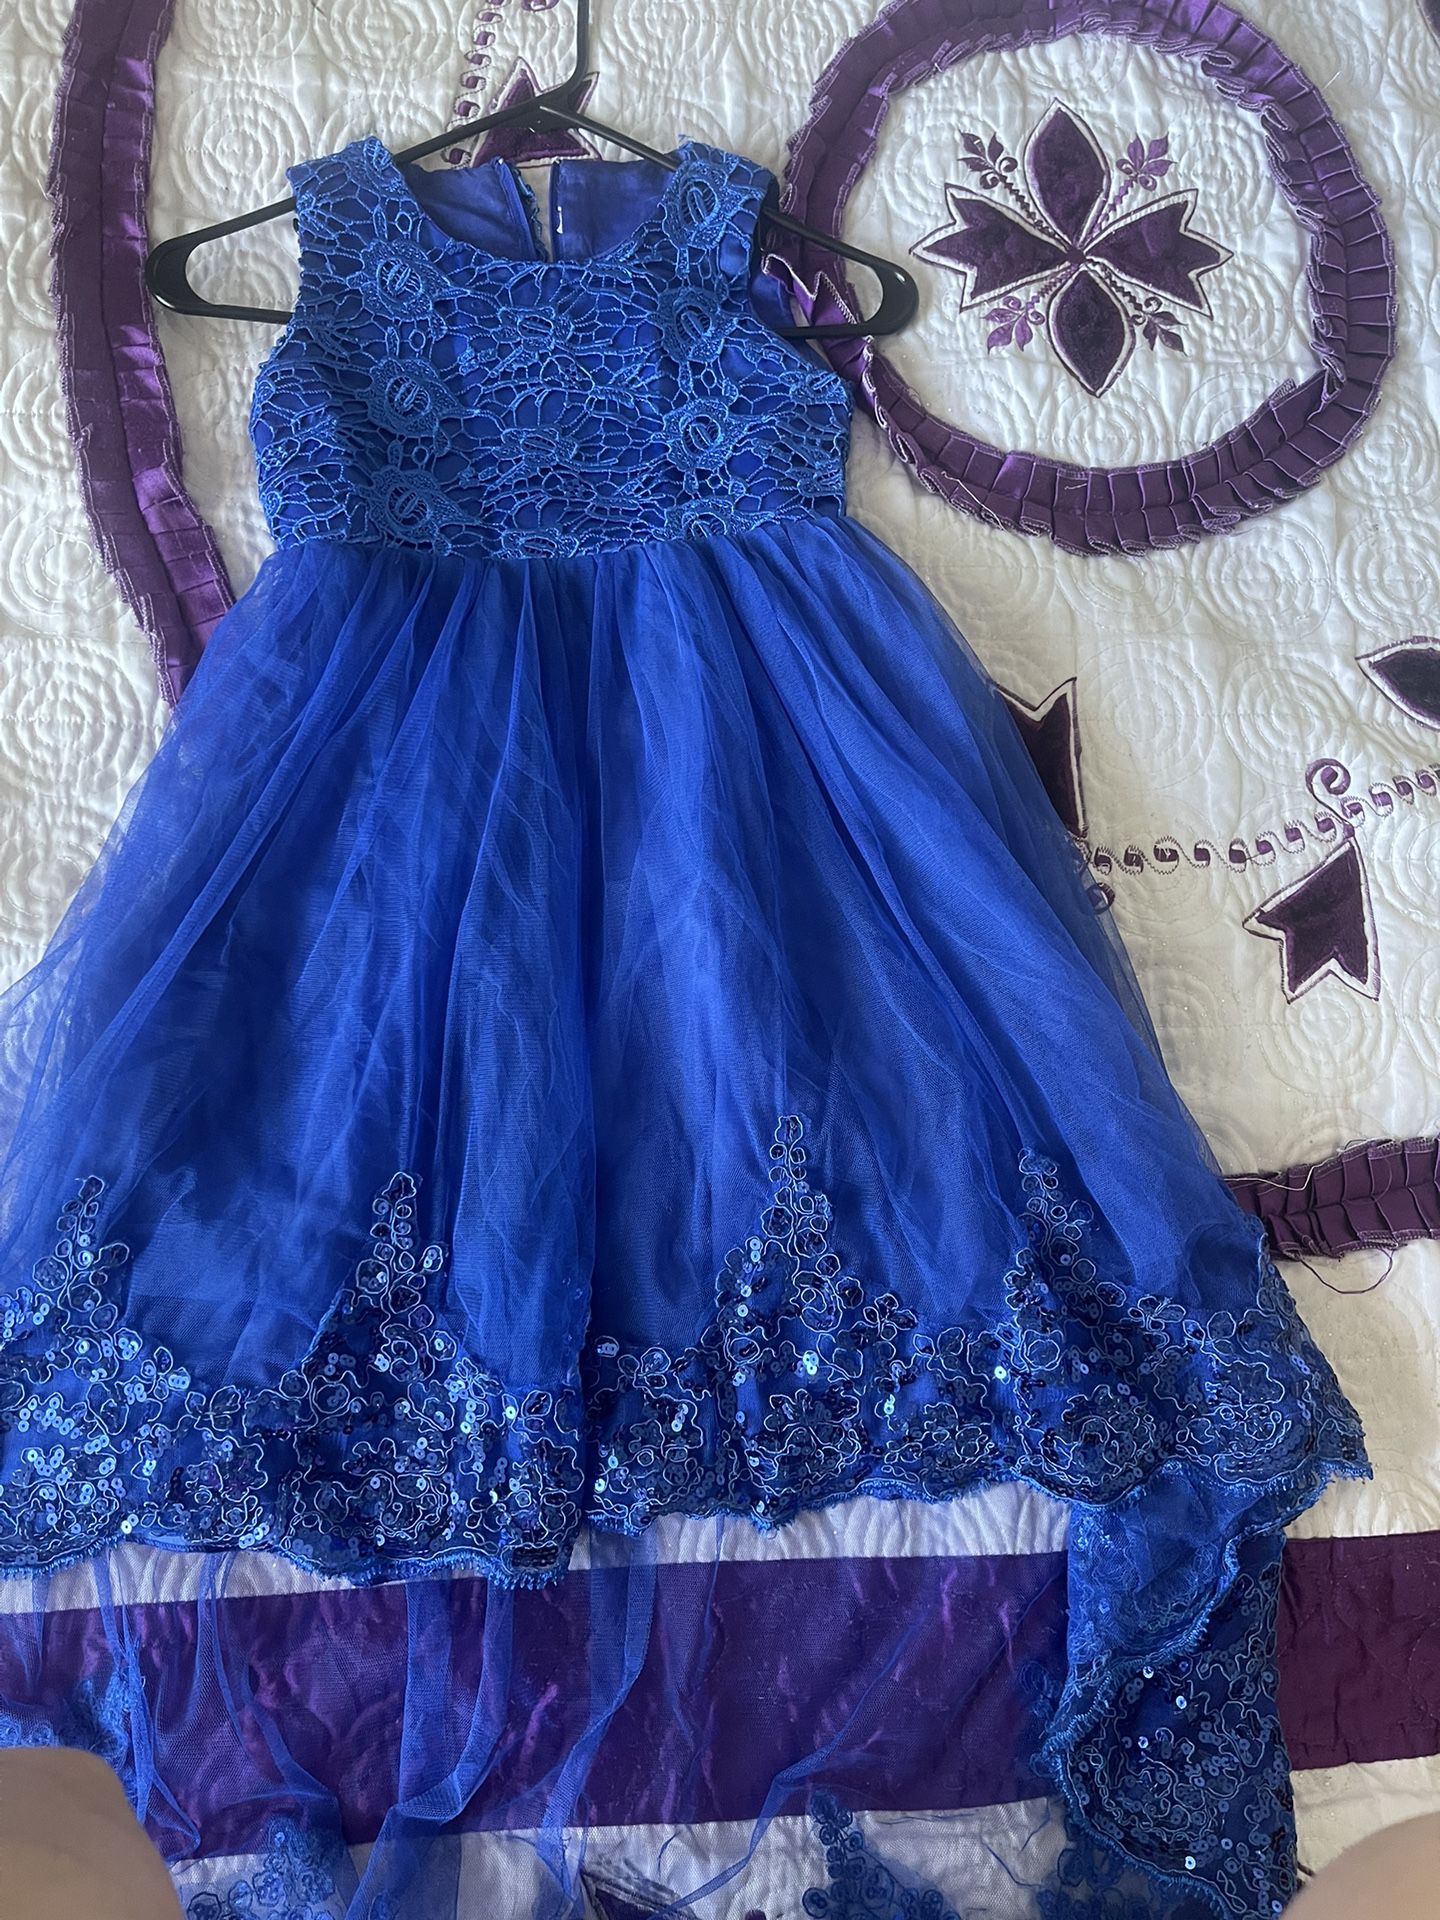 Blue Dress For Girl